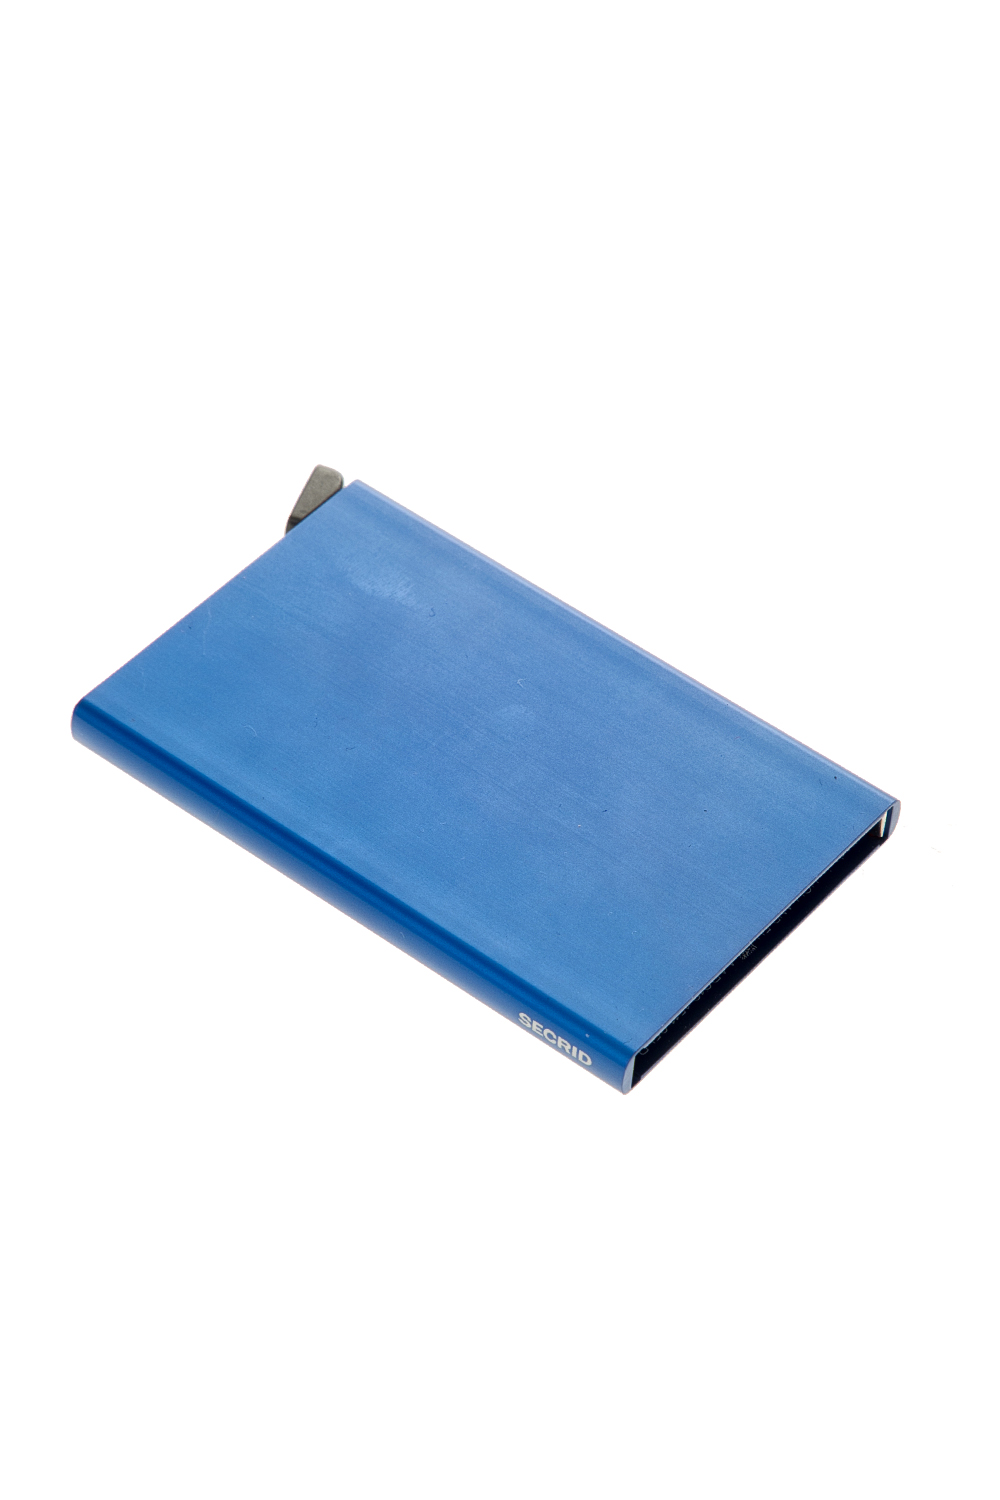 SECRID – Θήκη καρτών SECRID Cardprotector μπλε 1675364.0-0013